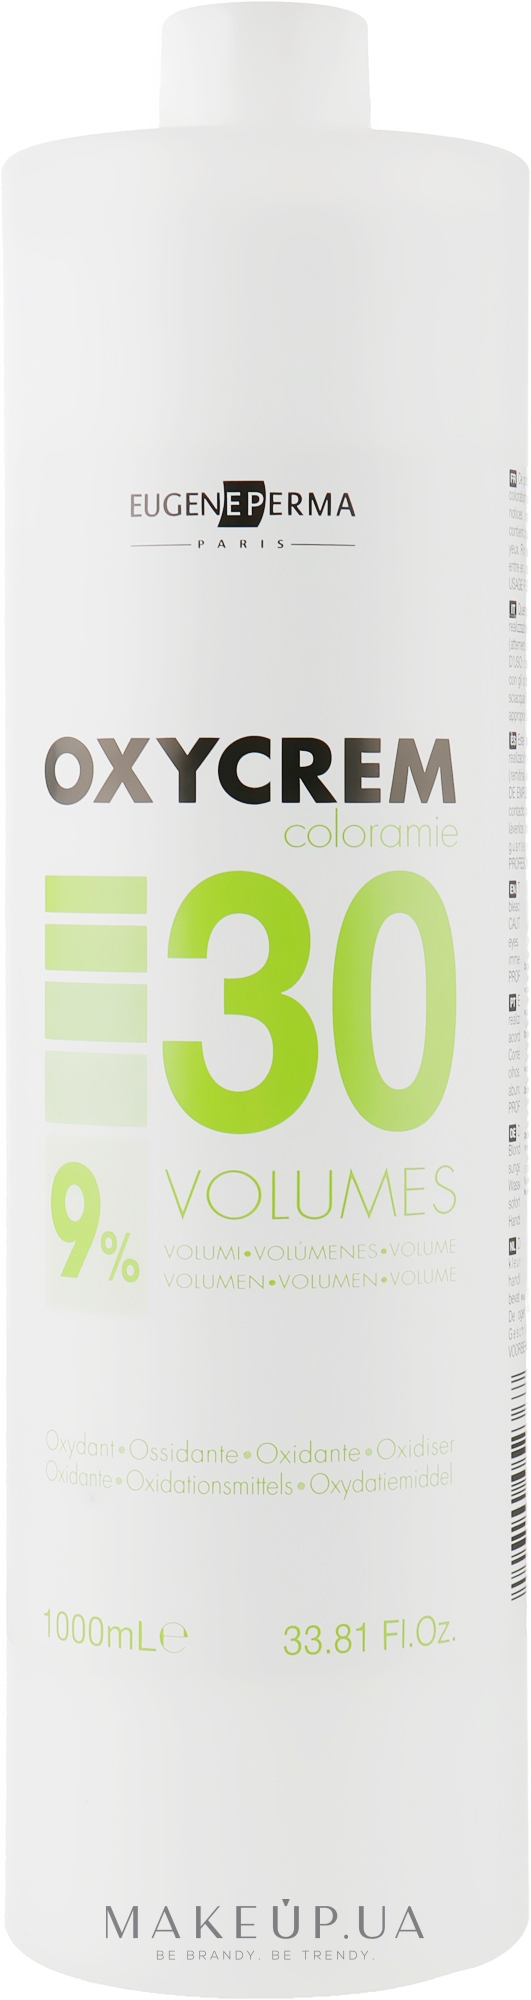 Окисник 30 Vol (9%) - Eugene Perma OxyCrem — фото 1000ml